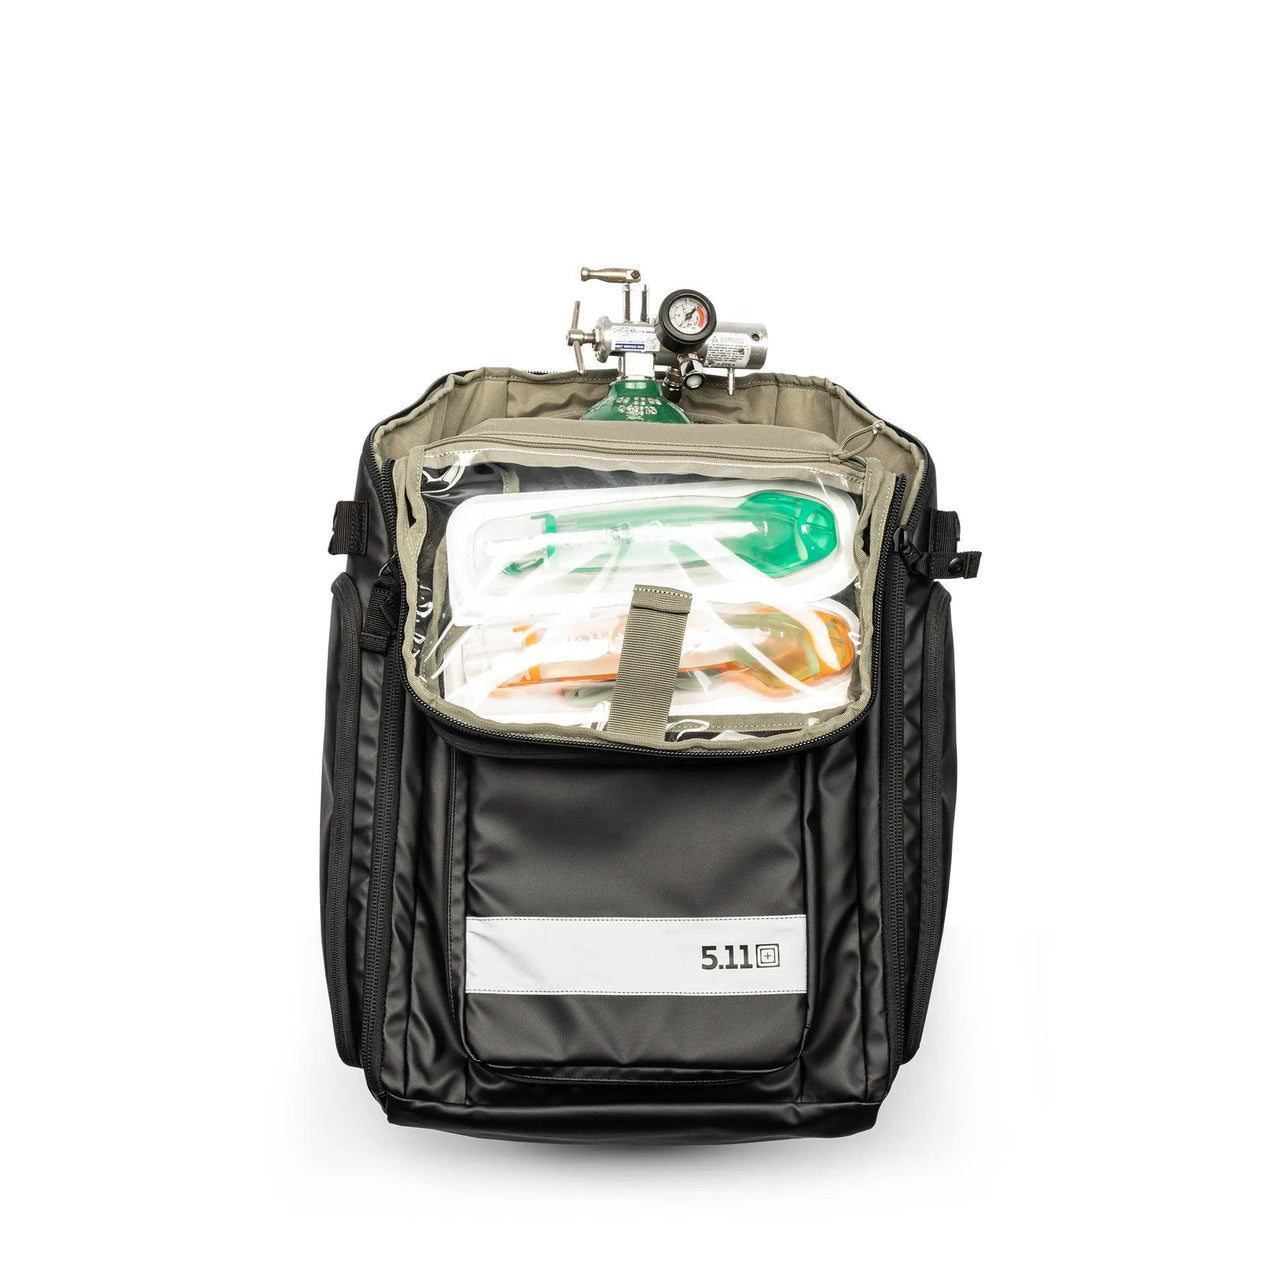 Responder 72 EMS Backpack - Vendor